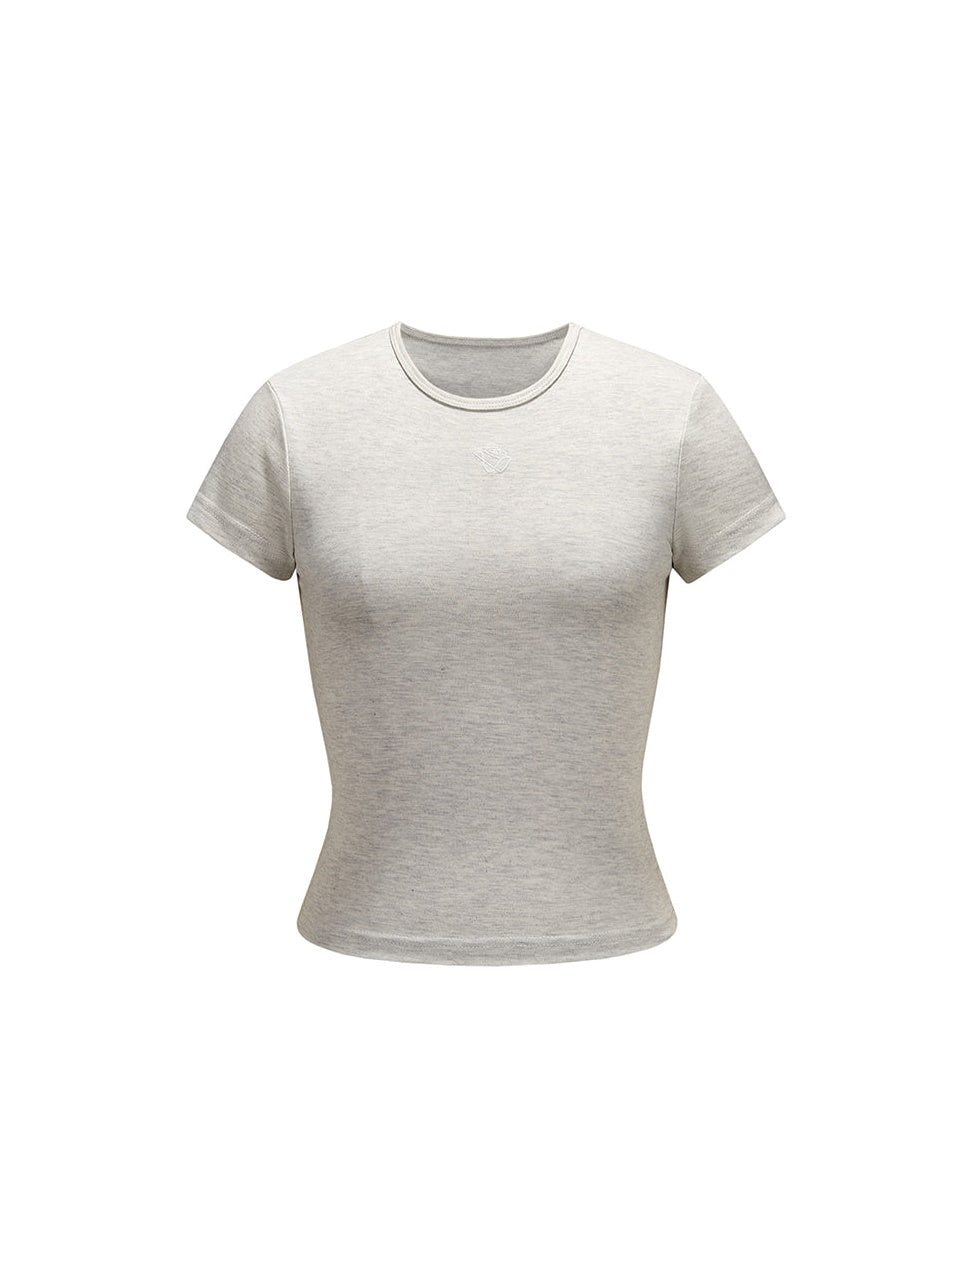 Round Neck Short T-Shirt - chiclara